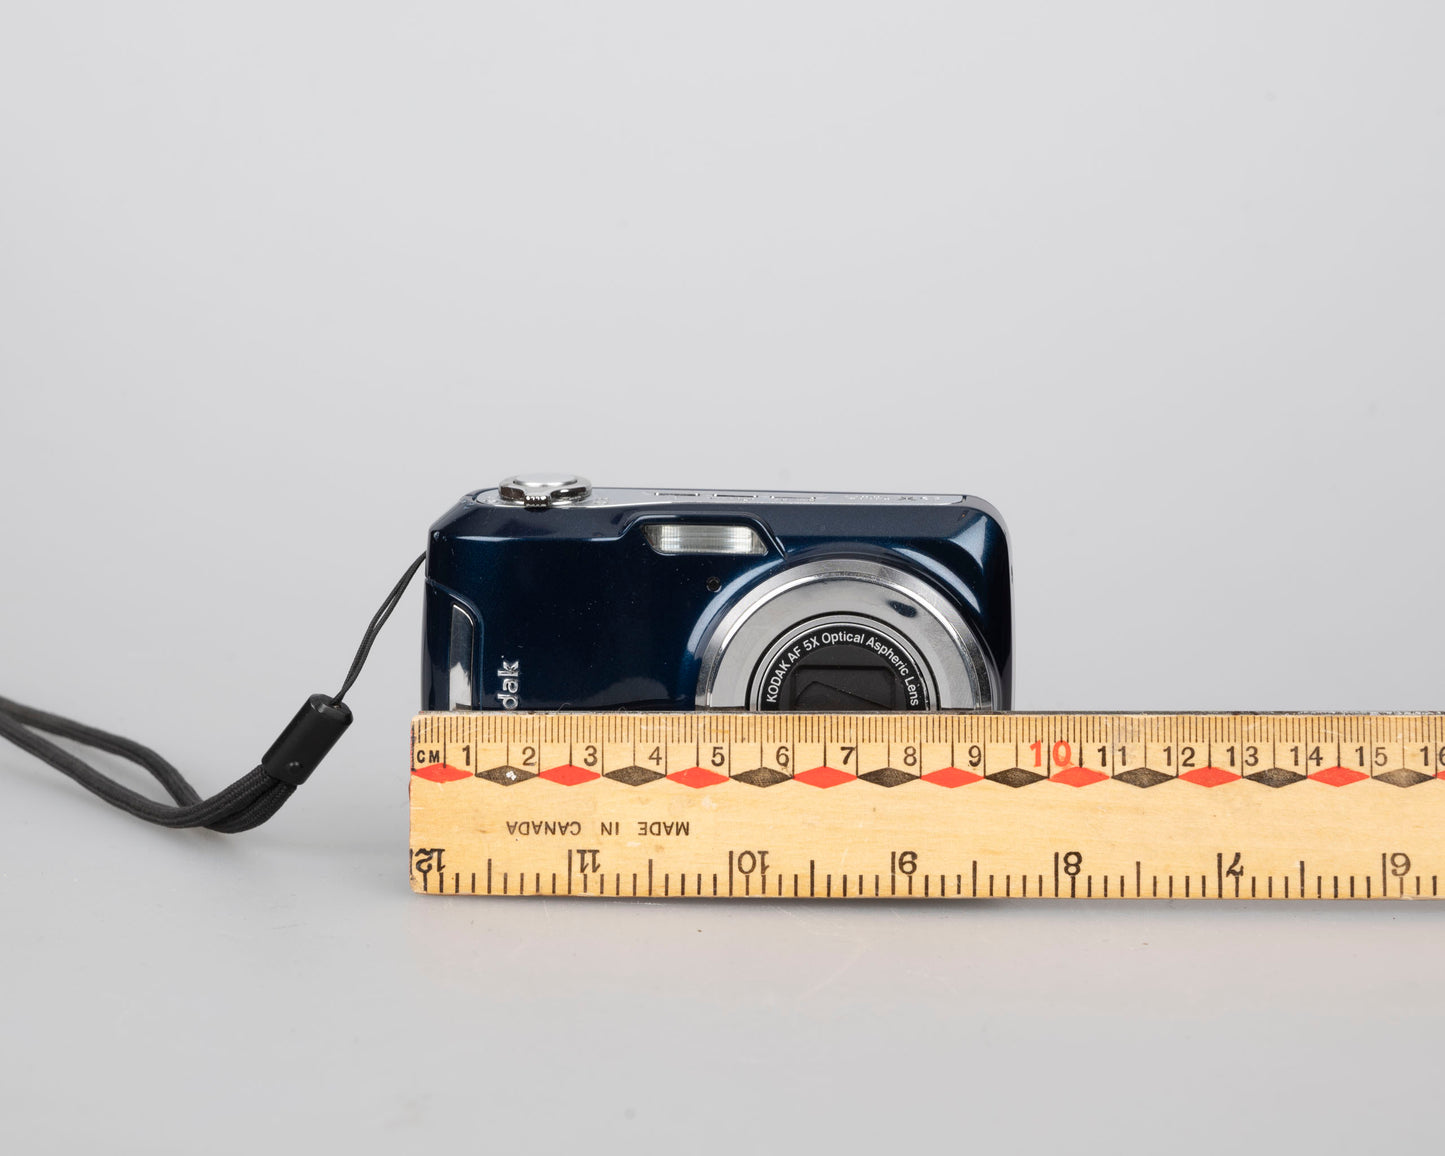 Appareil photo numérique à capteur CCD Kodak Easyshare C195 14 MP avec manuel et câble USB (utilise des piles AA et des cartes mémoire SD)